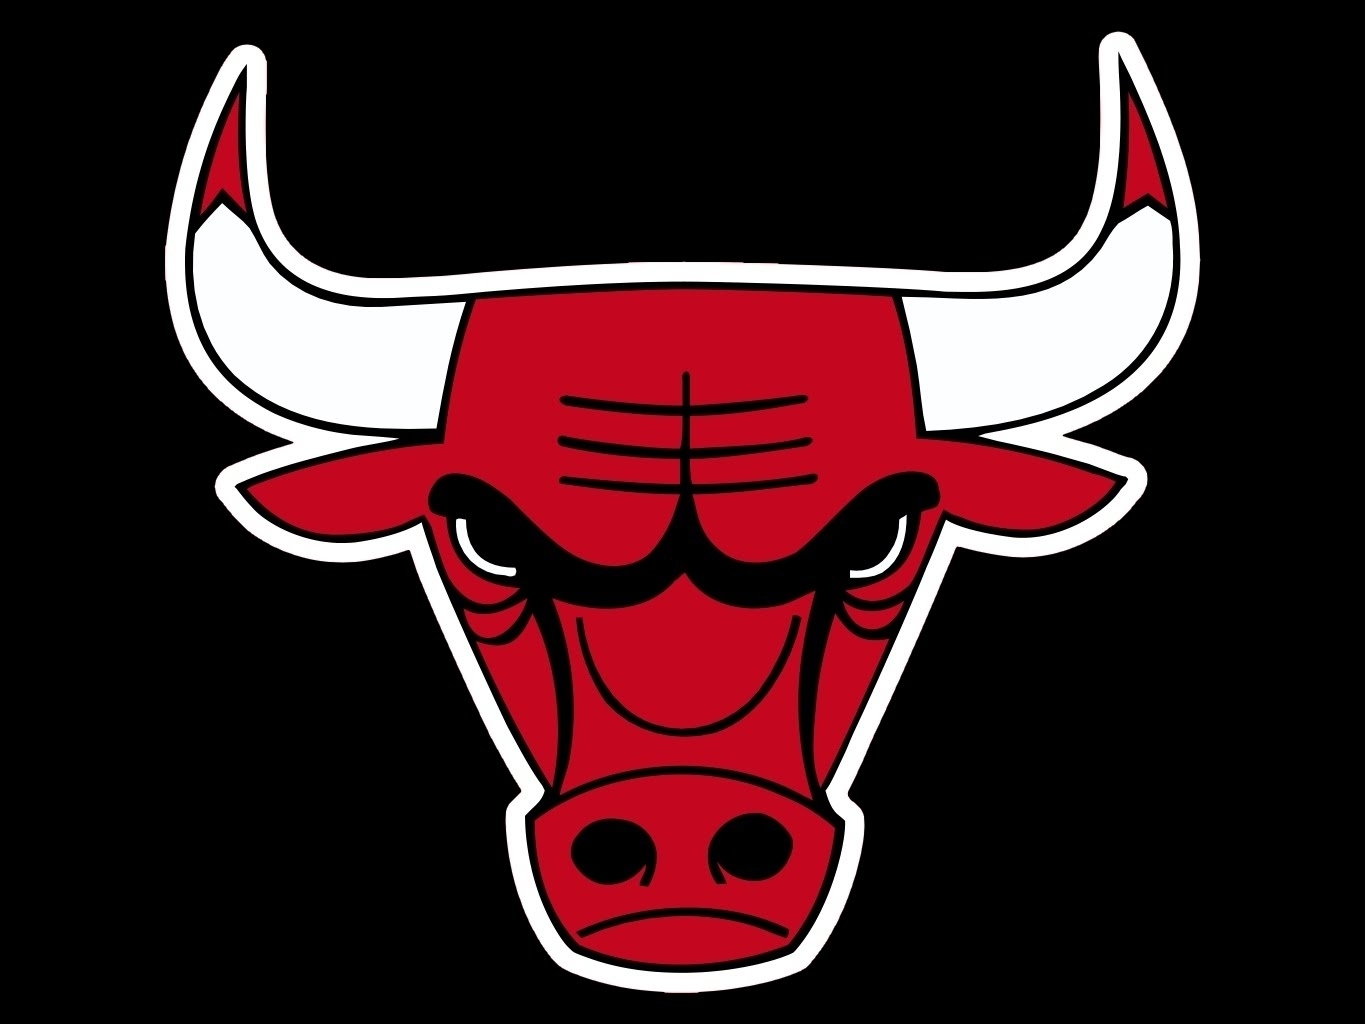 logo dojo chicago bulls (speed) - youtube